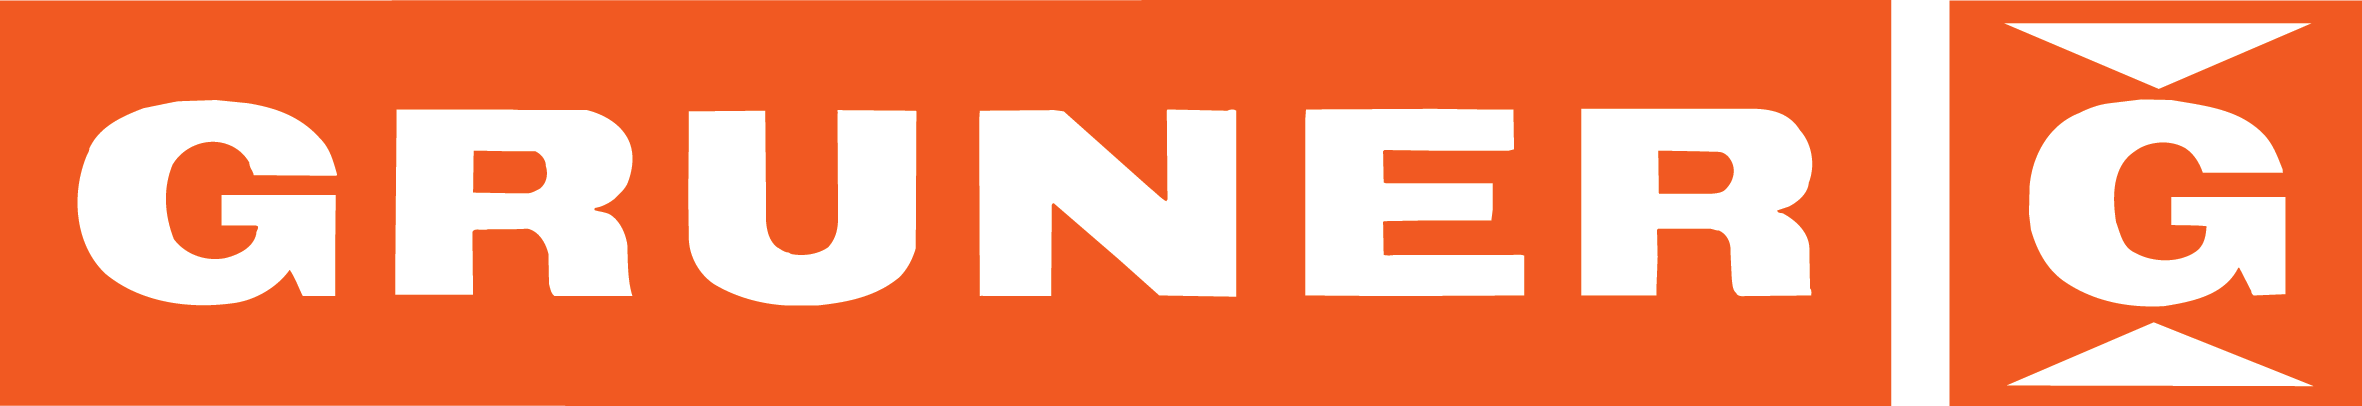 Логотип Gruner